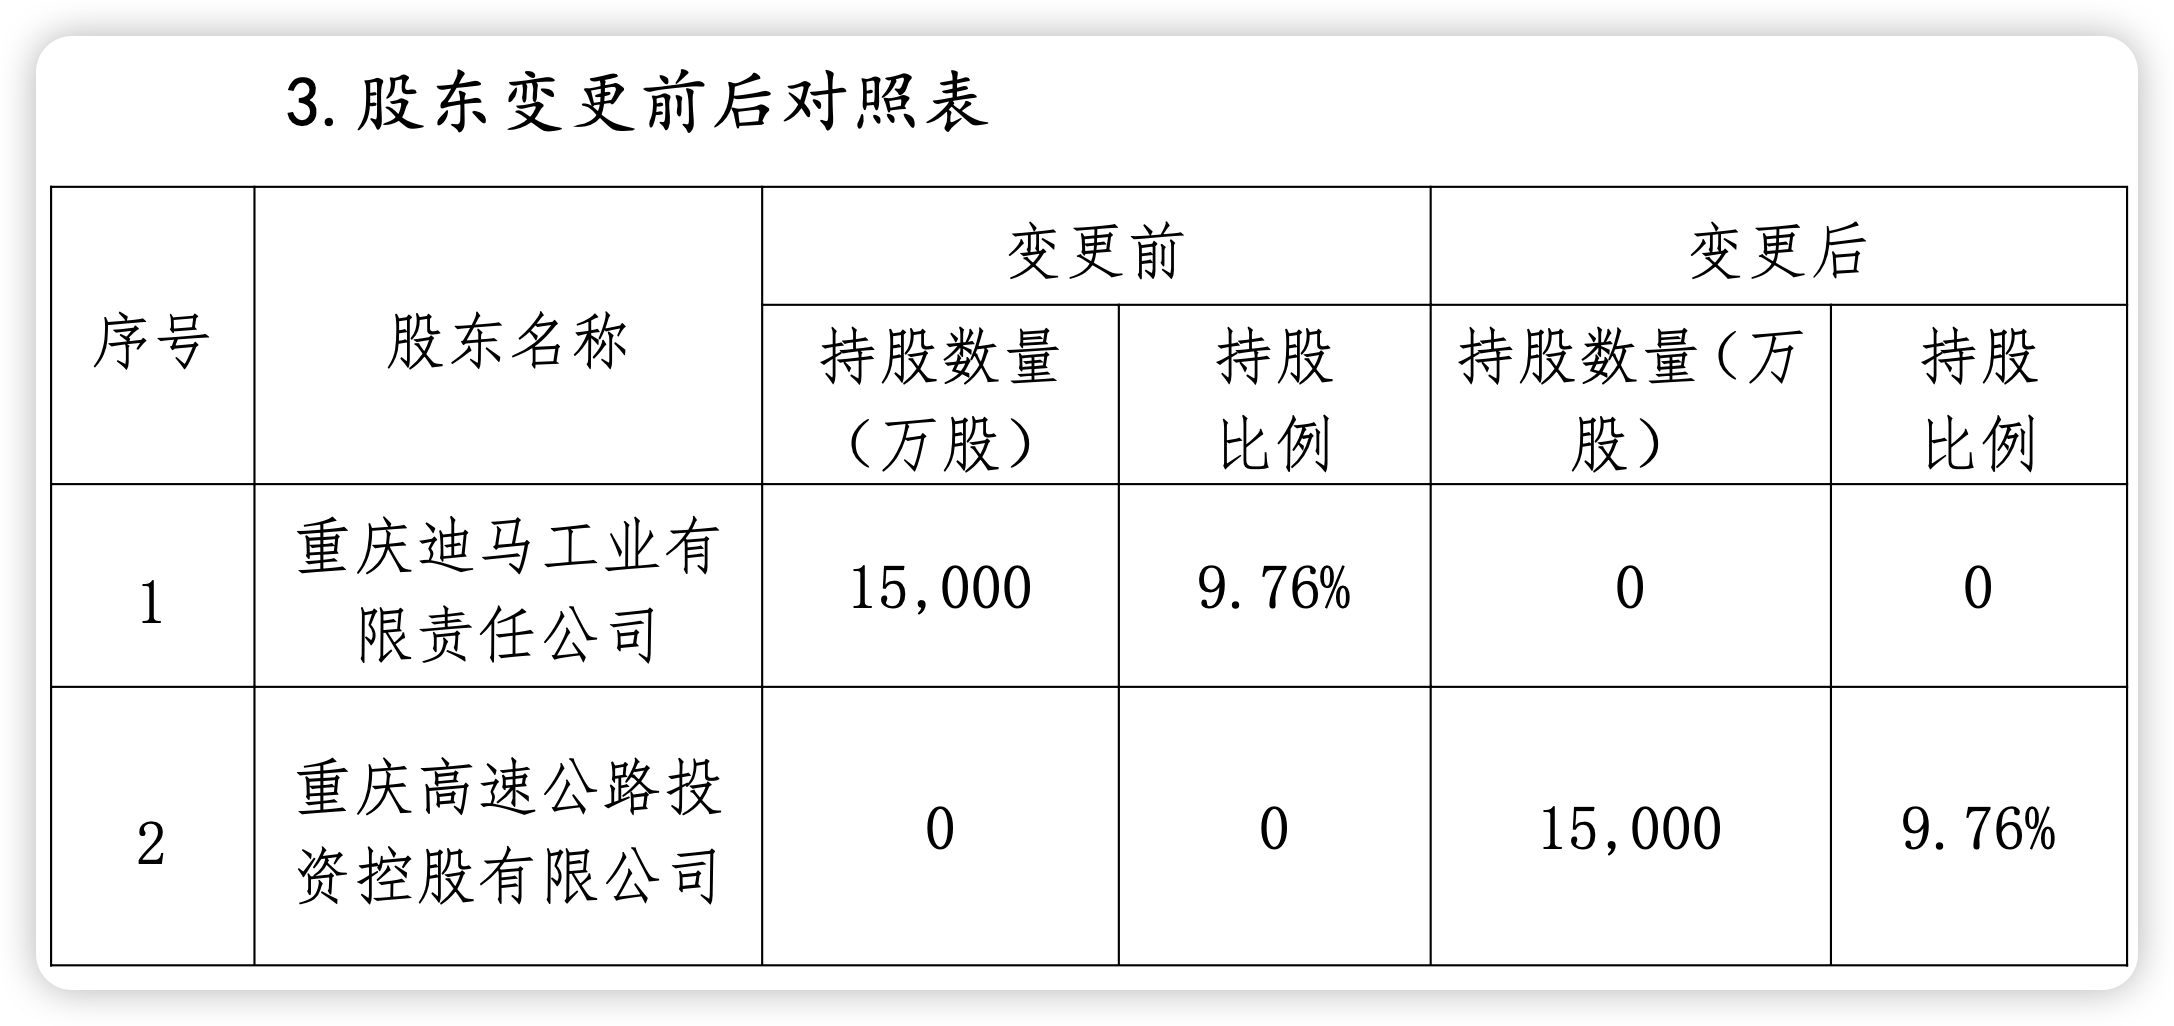 三峡人寿第五大股东清仓退场 重庆国资拟受让9.76%股权 曾经的“D等生” 能否迎转机？